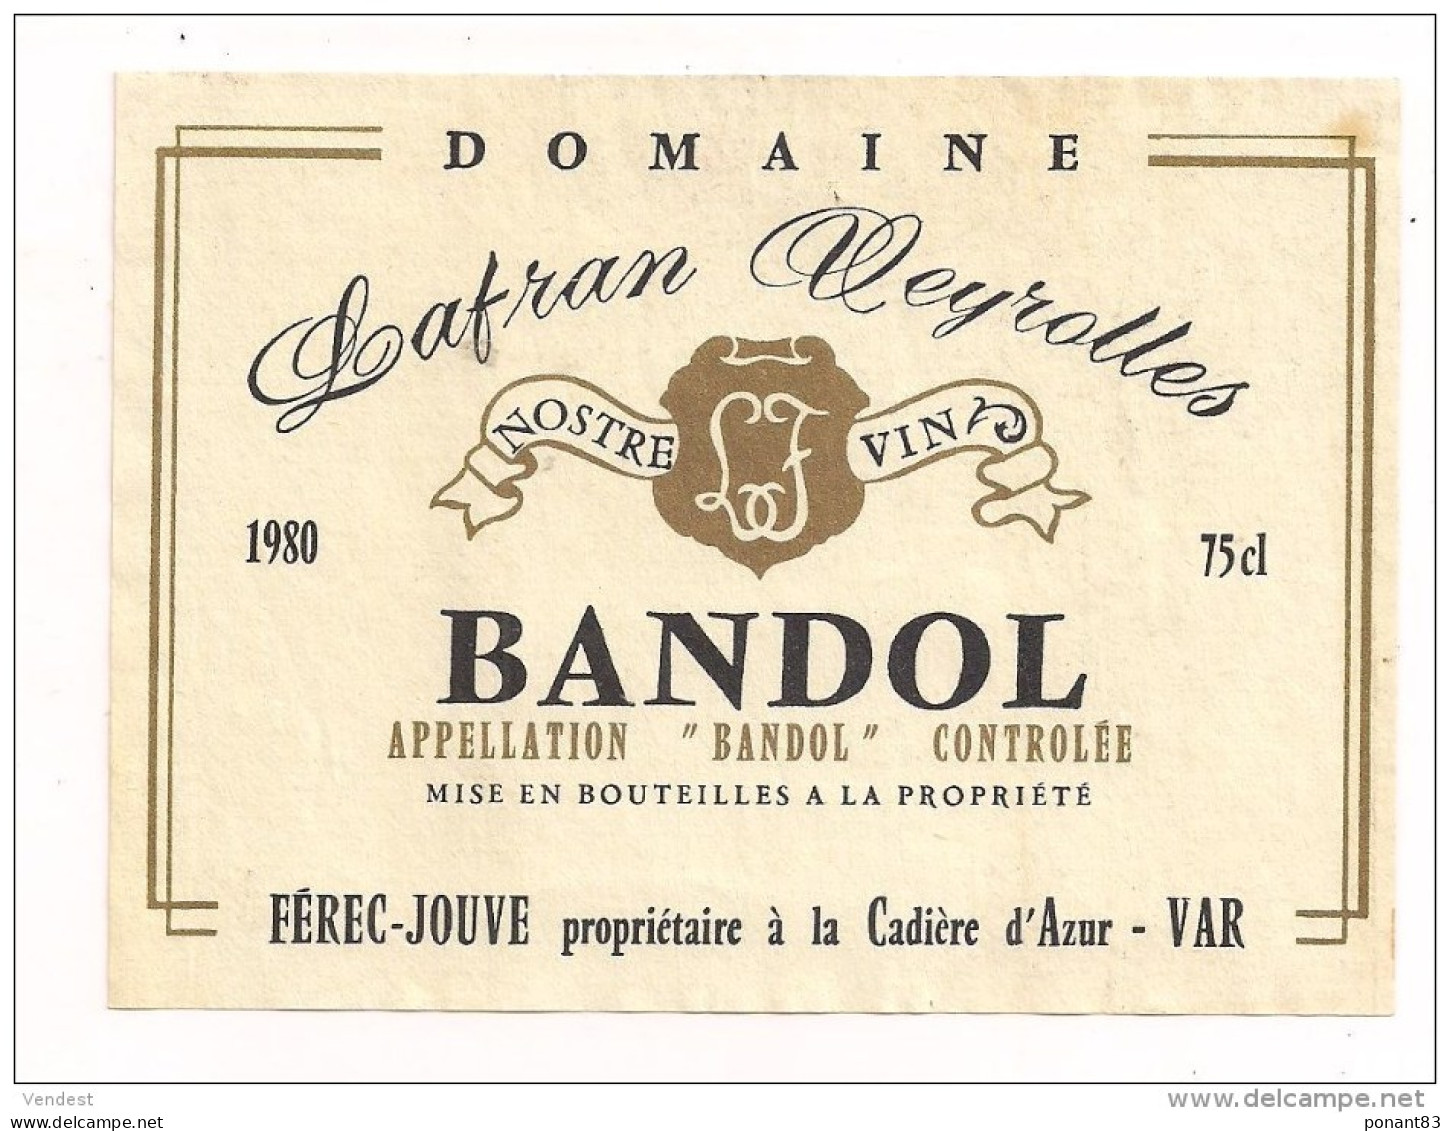 Etiquettes  Décollées BANDOL Cellier De Cathedra 1997, 2002, Prestige Et Lafran Veyrolles - - Pink Wines